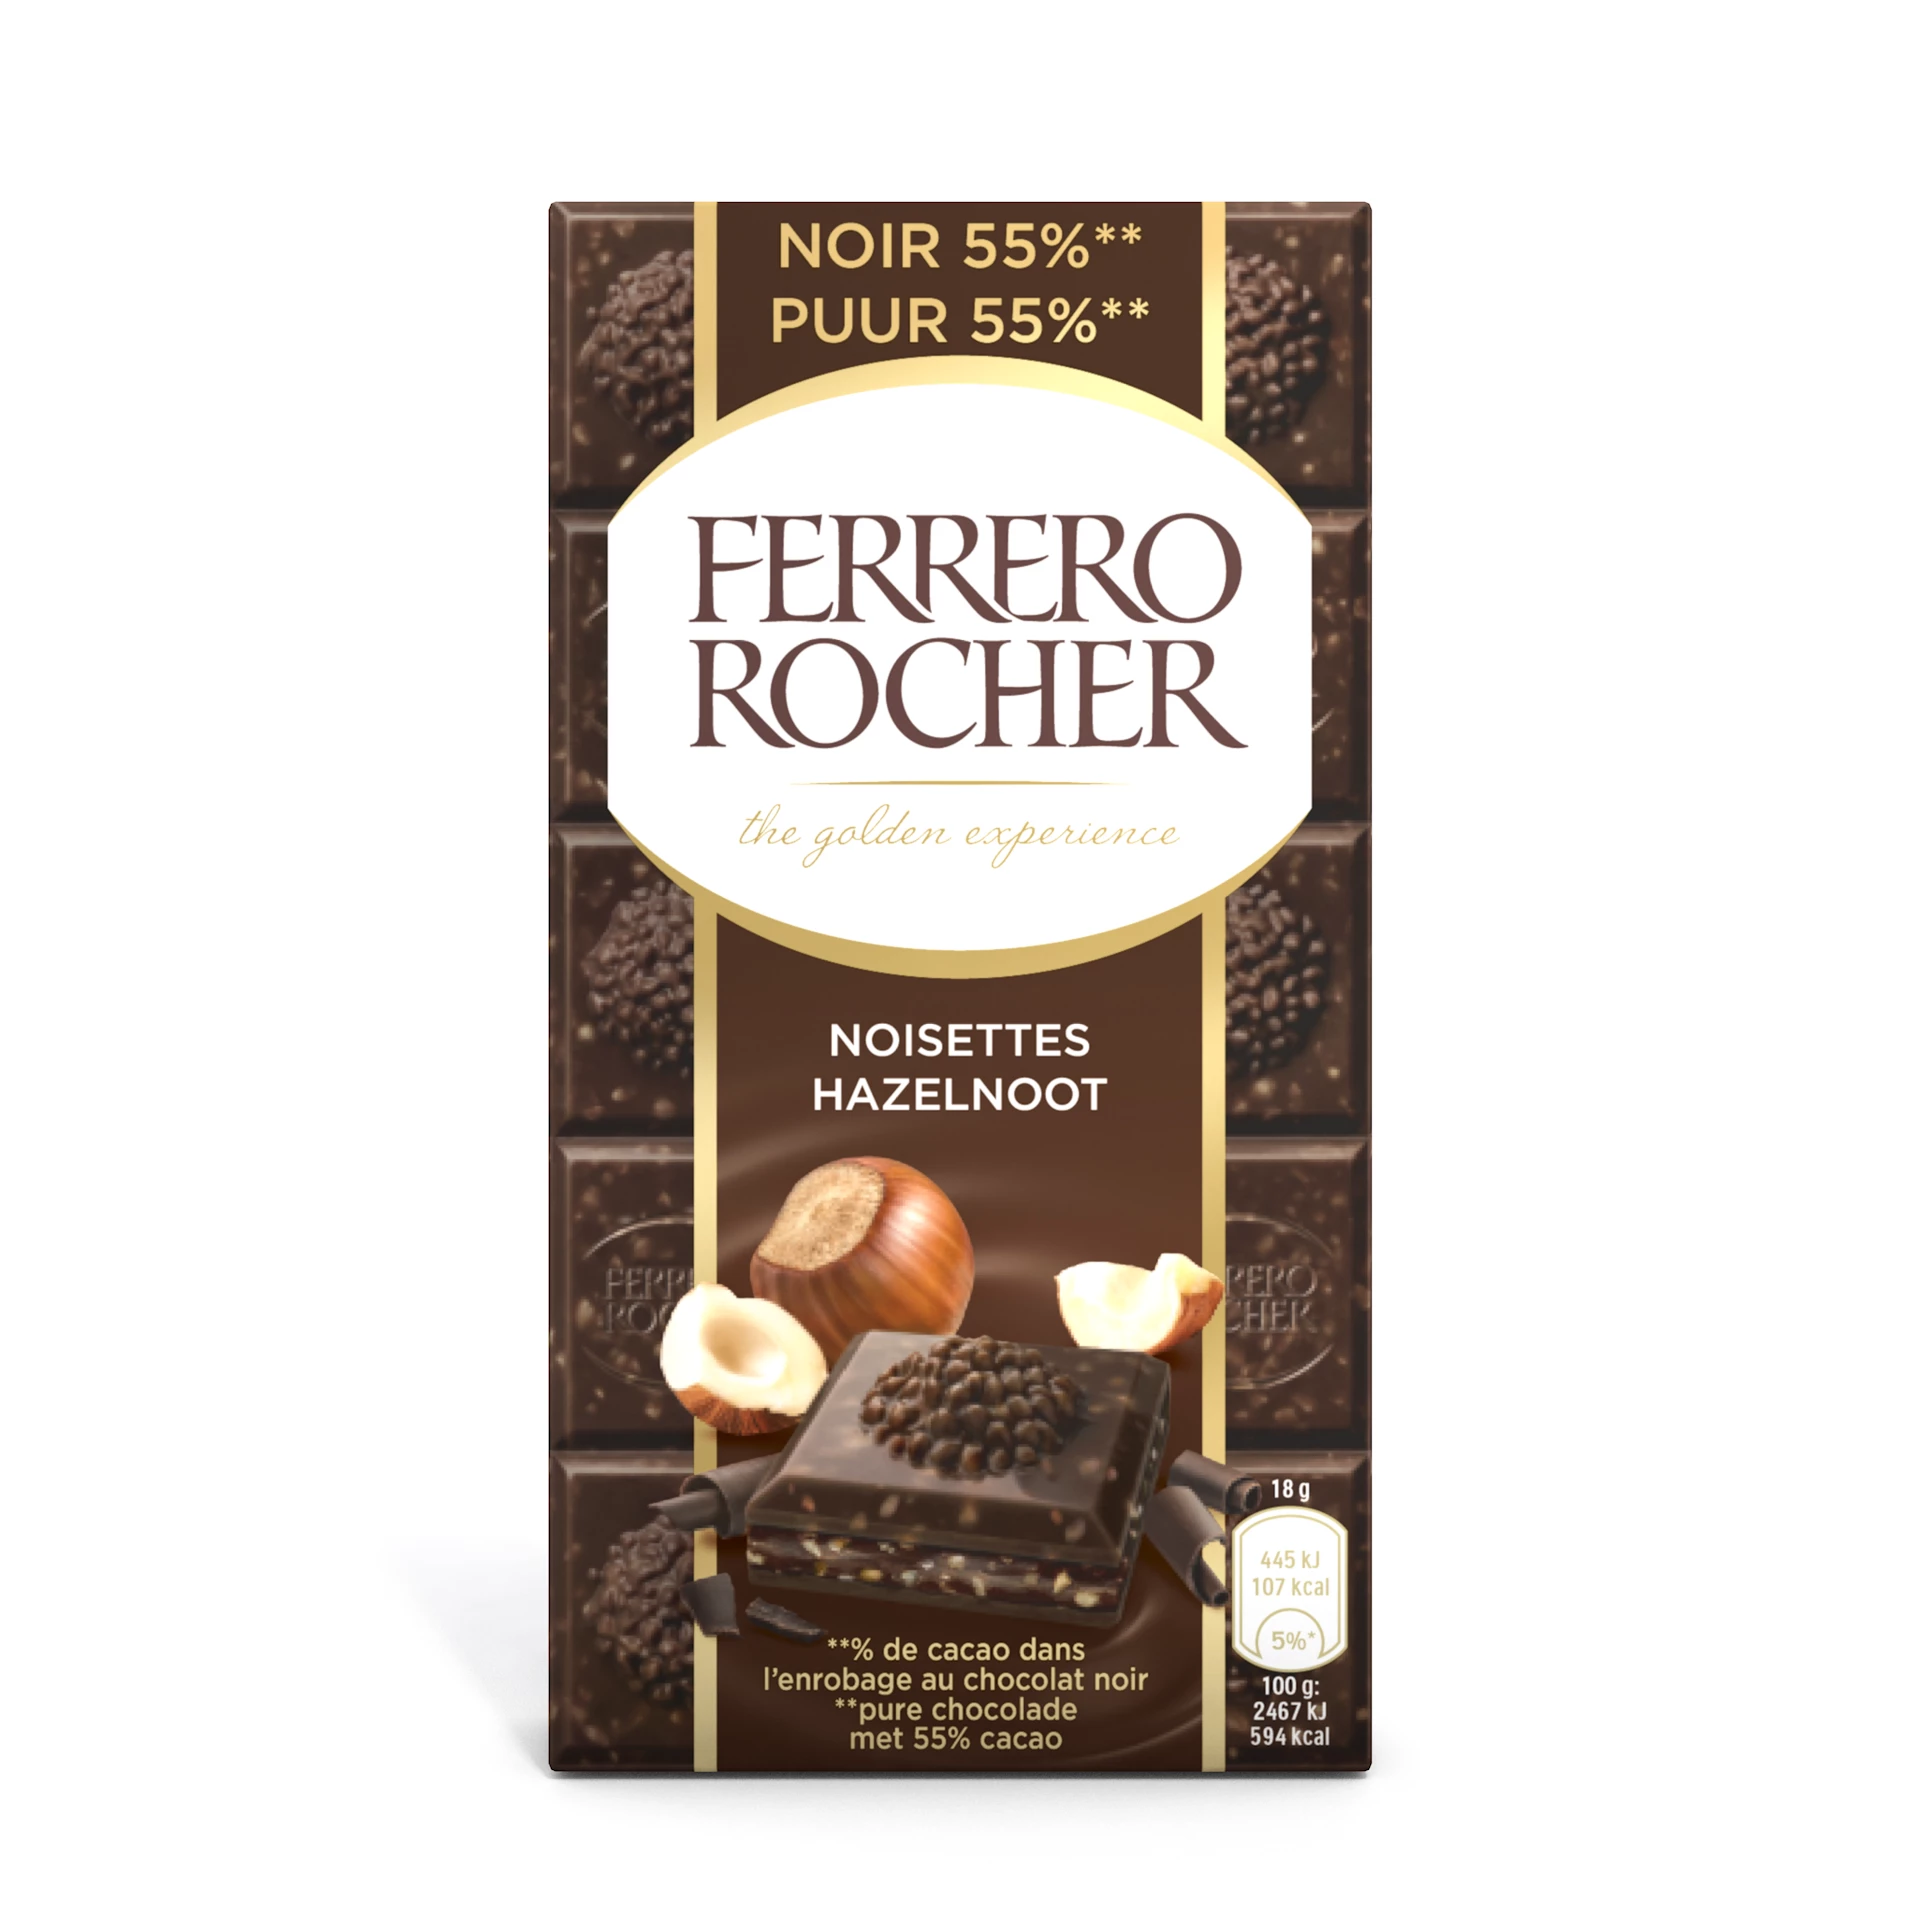 Ferrero Rocher Schwarze Haselnuss, 90g - FERRERO